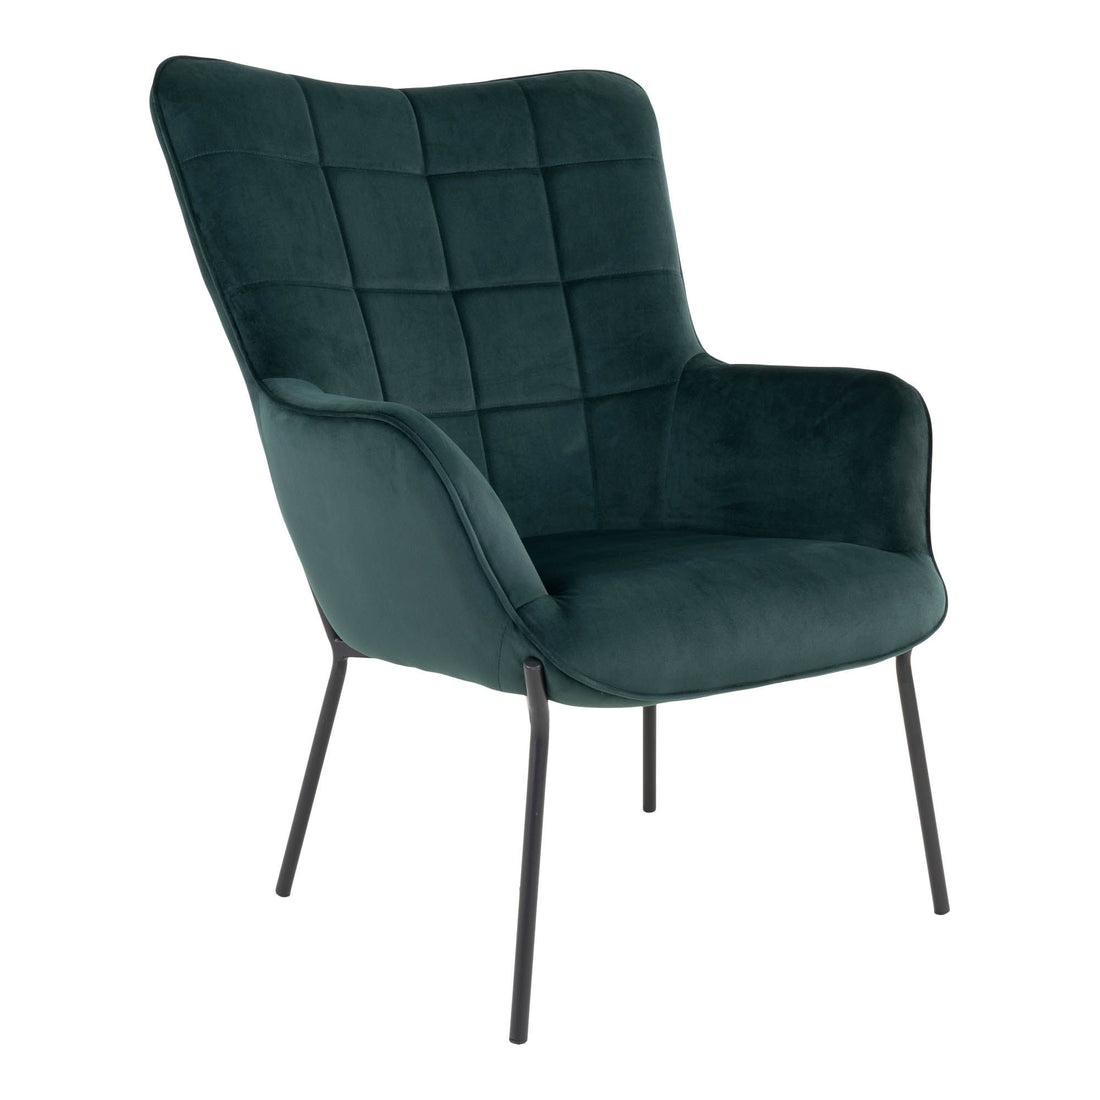 Glasgow stol - stol i grønn velour med svarte ben - 1 - PC -er